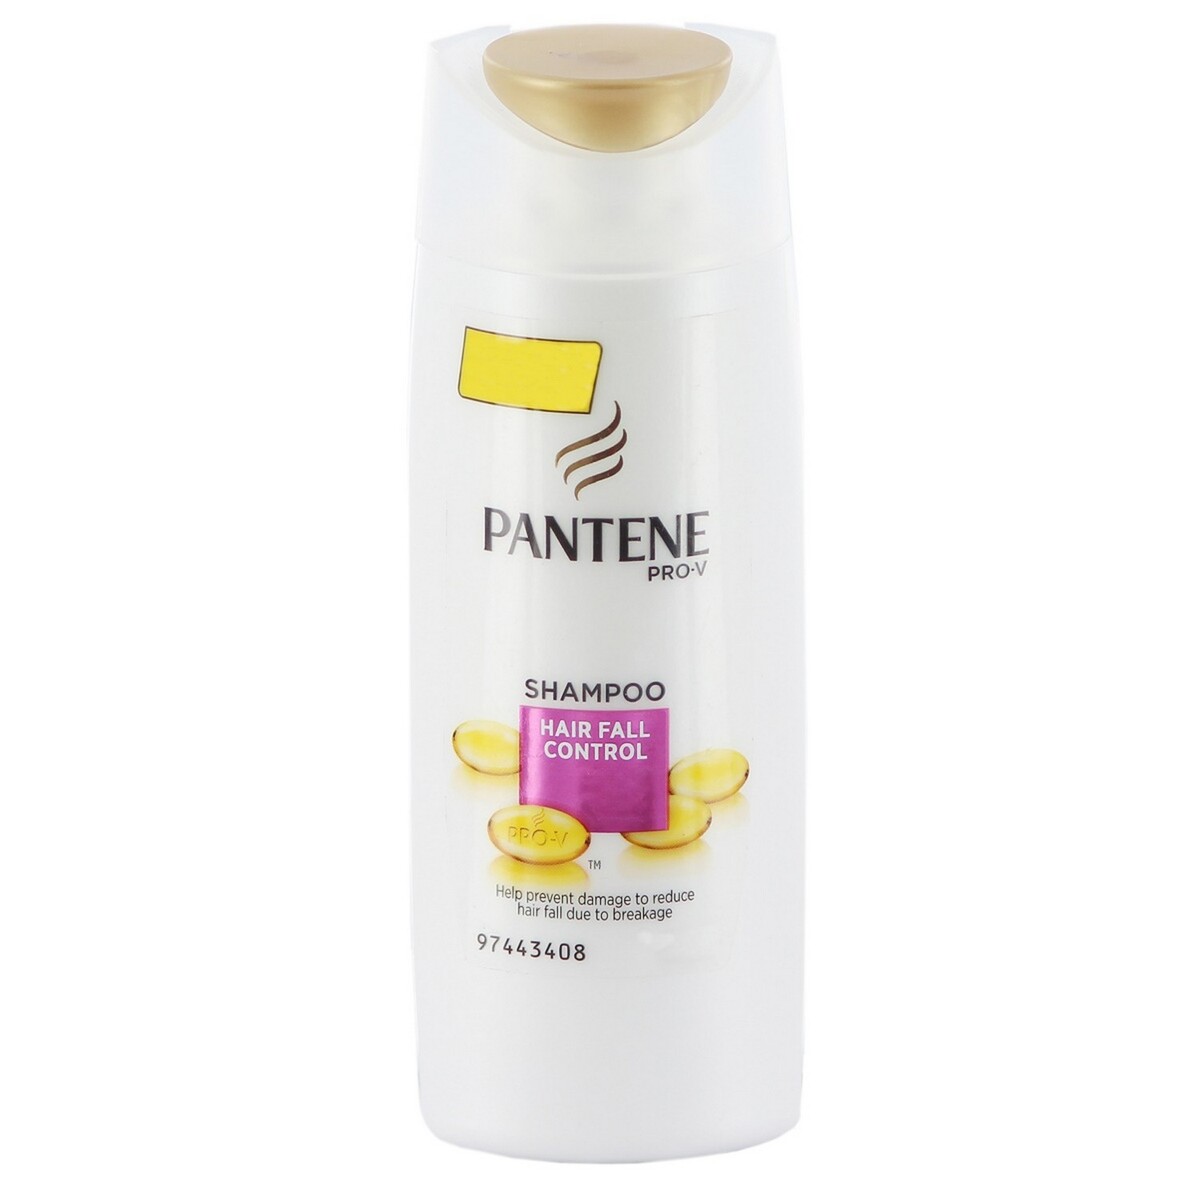 Pantene Shampoo Hair Fall Control 180ml